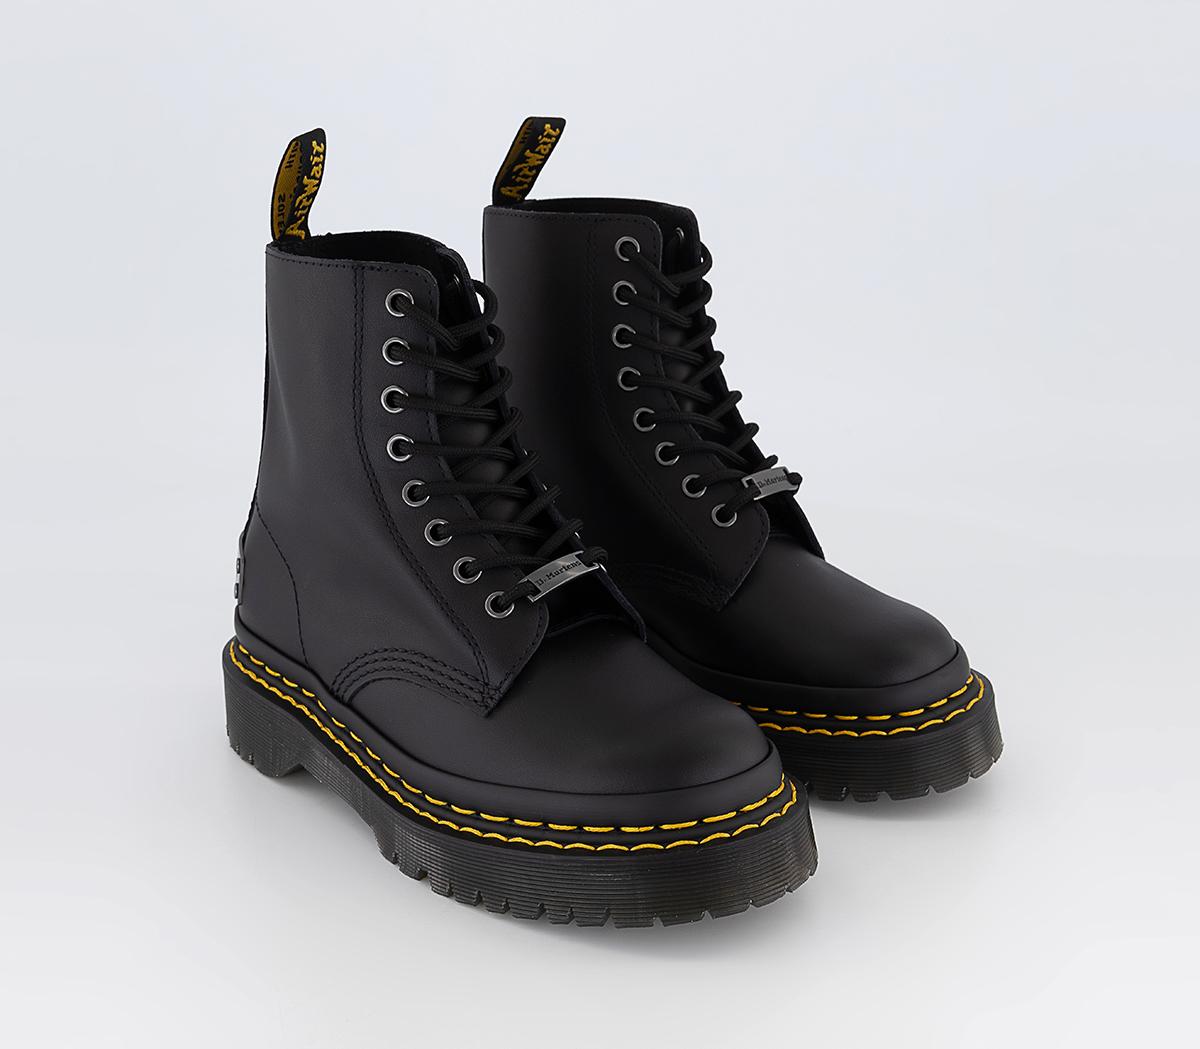 Dr. Martens 1460 Bex Ds Pltd Boots Black Backhand - Women's Ankle Boots